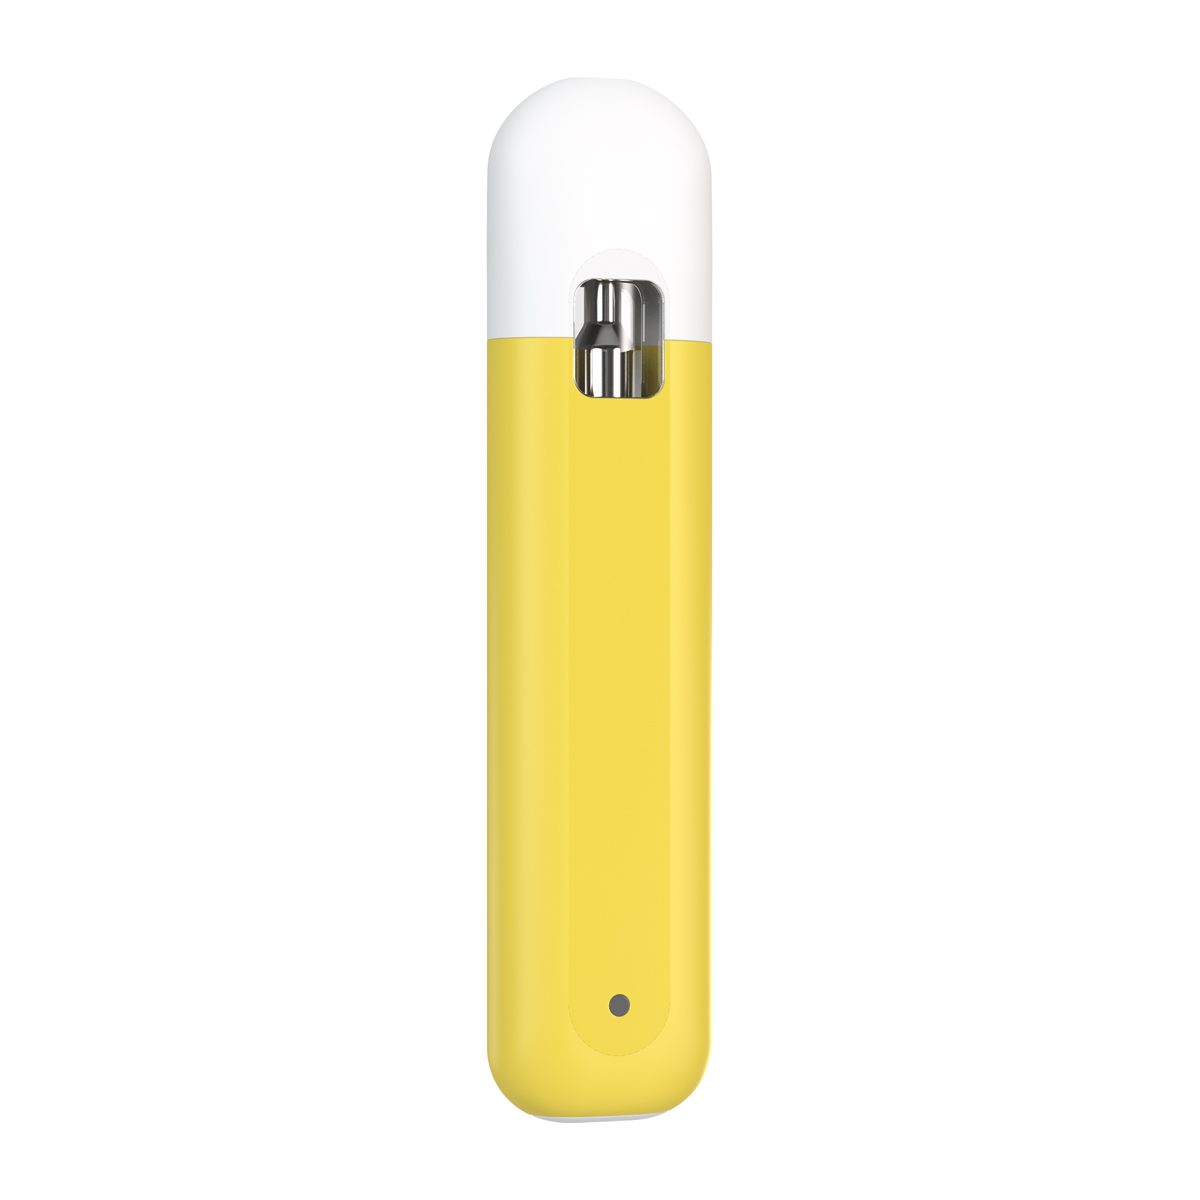 CCELL Listo Yellow jednorazowy waporyzator do samodzielnego napełnienia 1ml